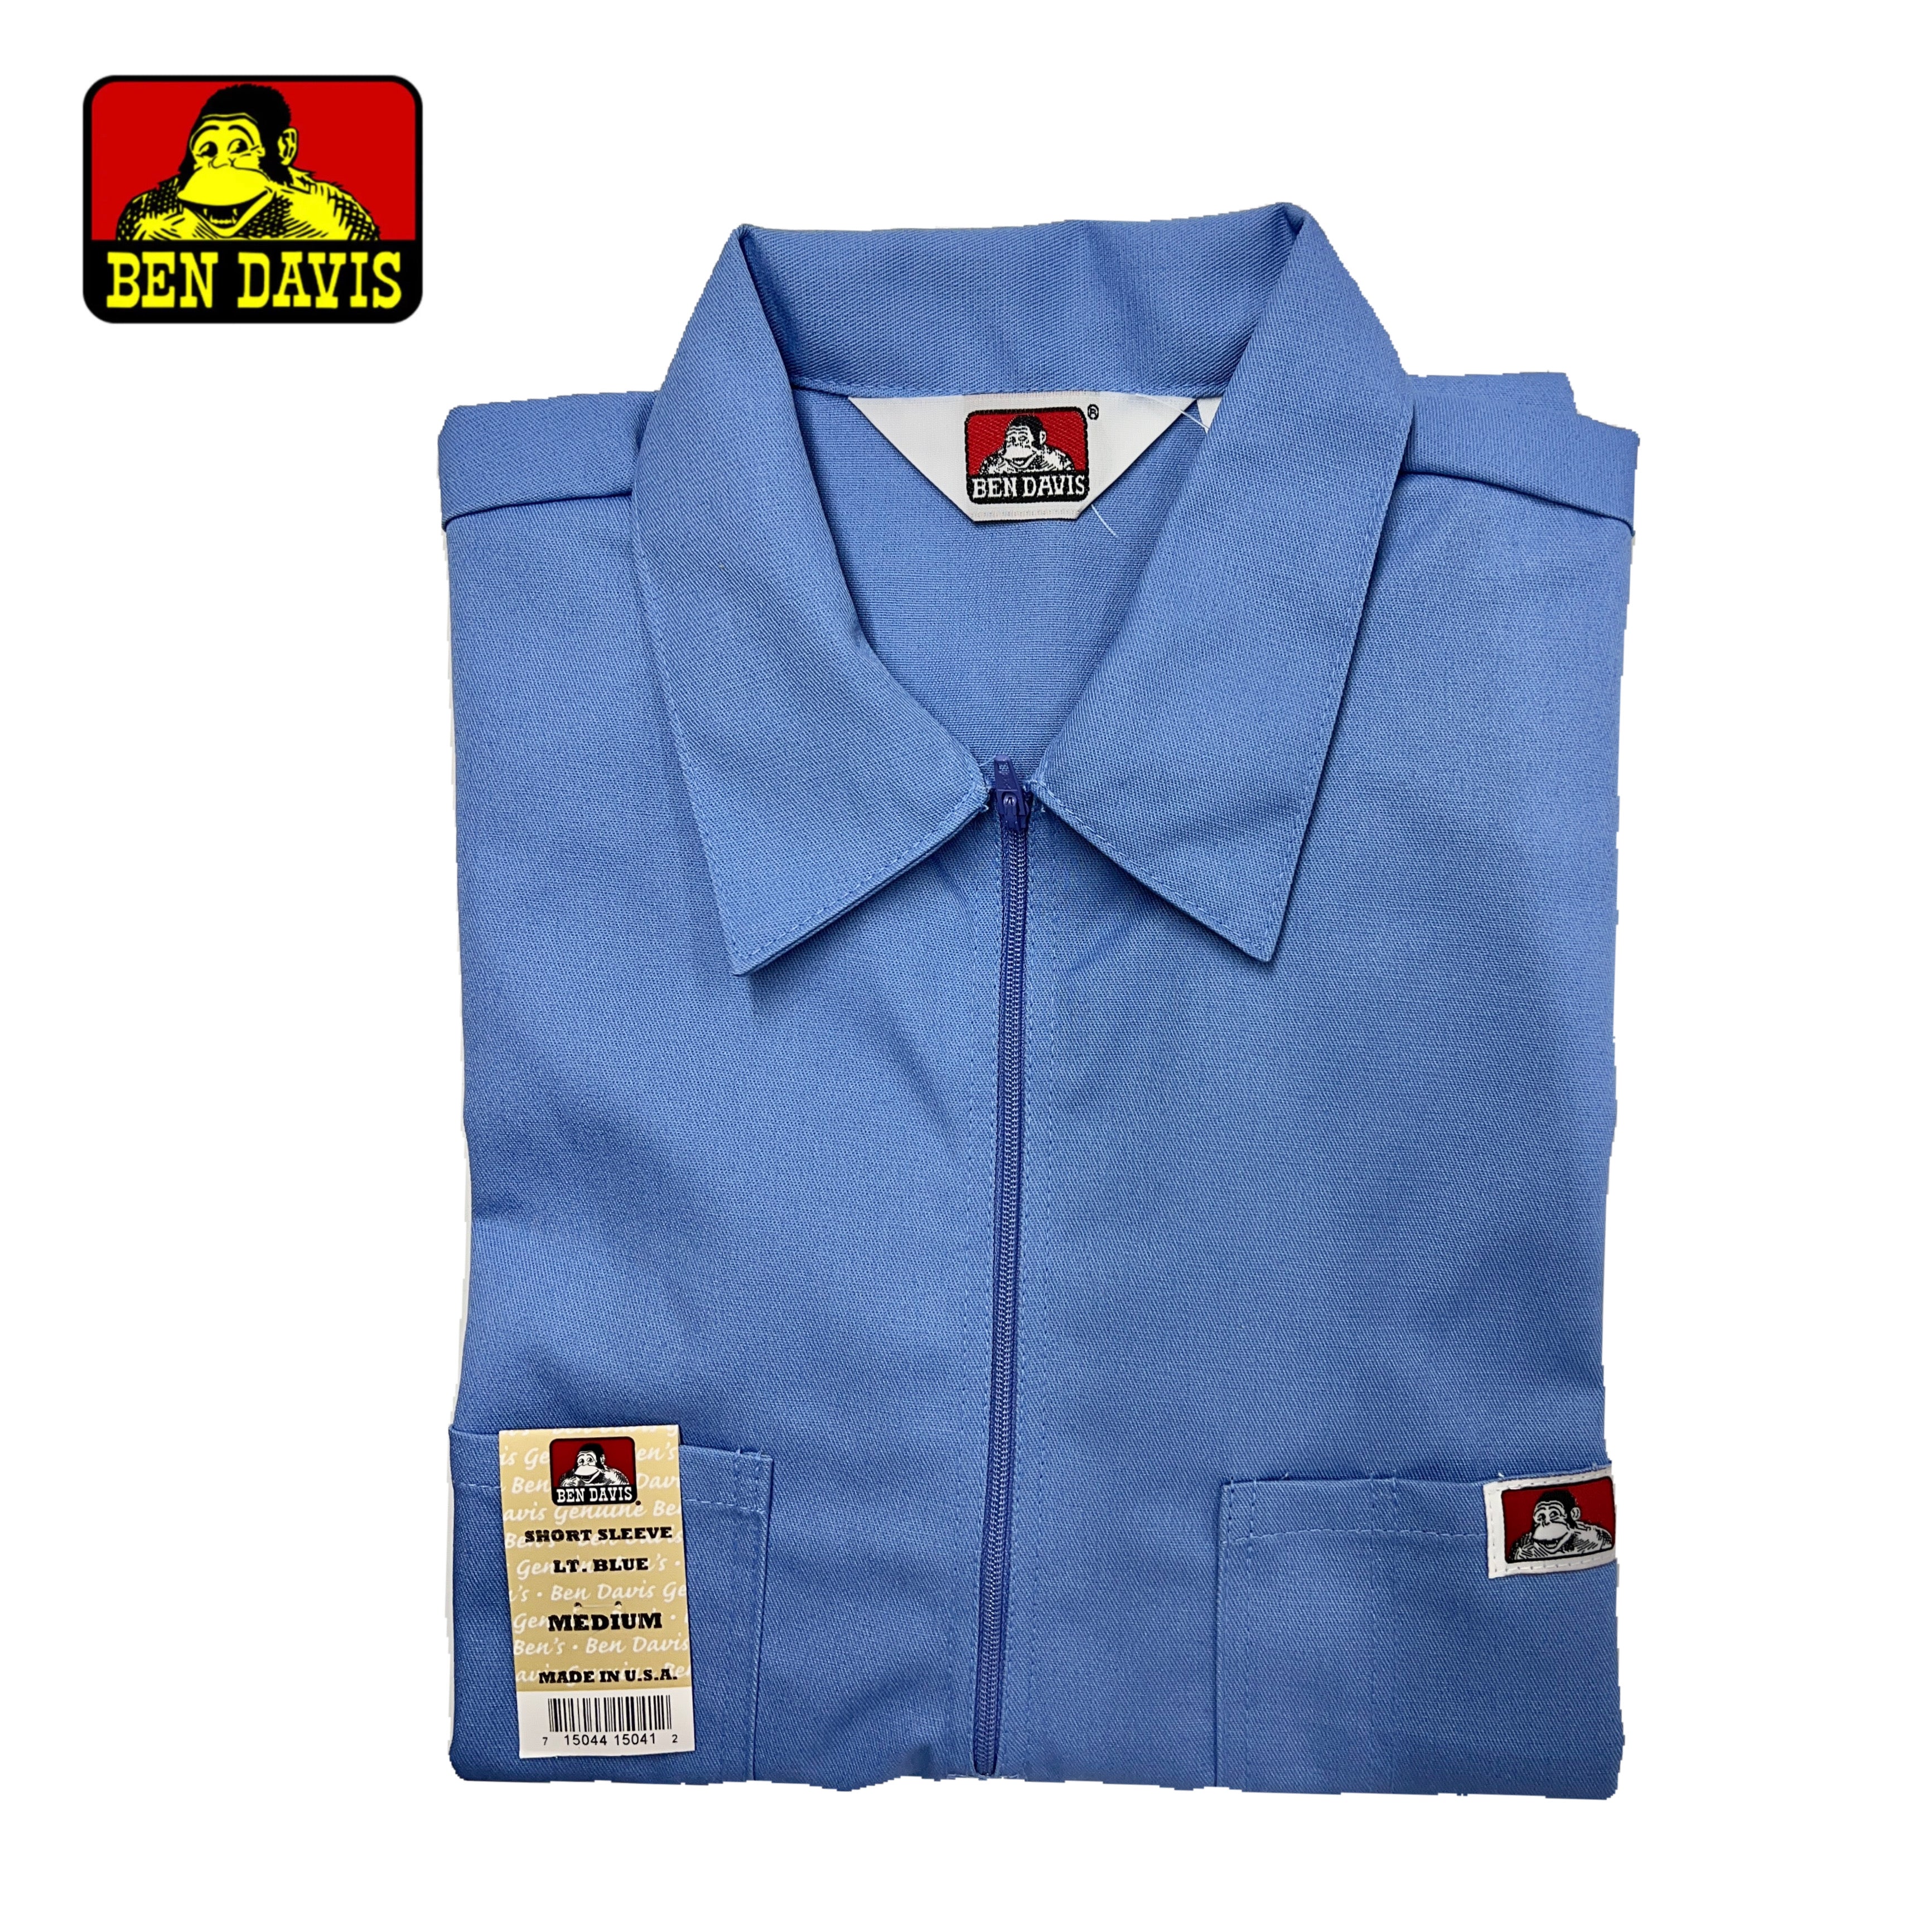 Ben Davis Short Sleeve Solid 1/2 Zip Shirt